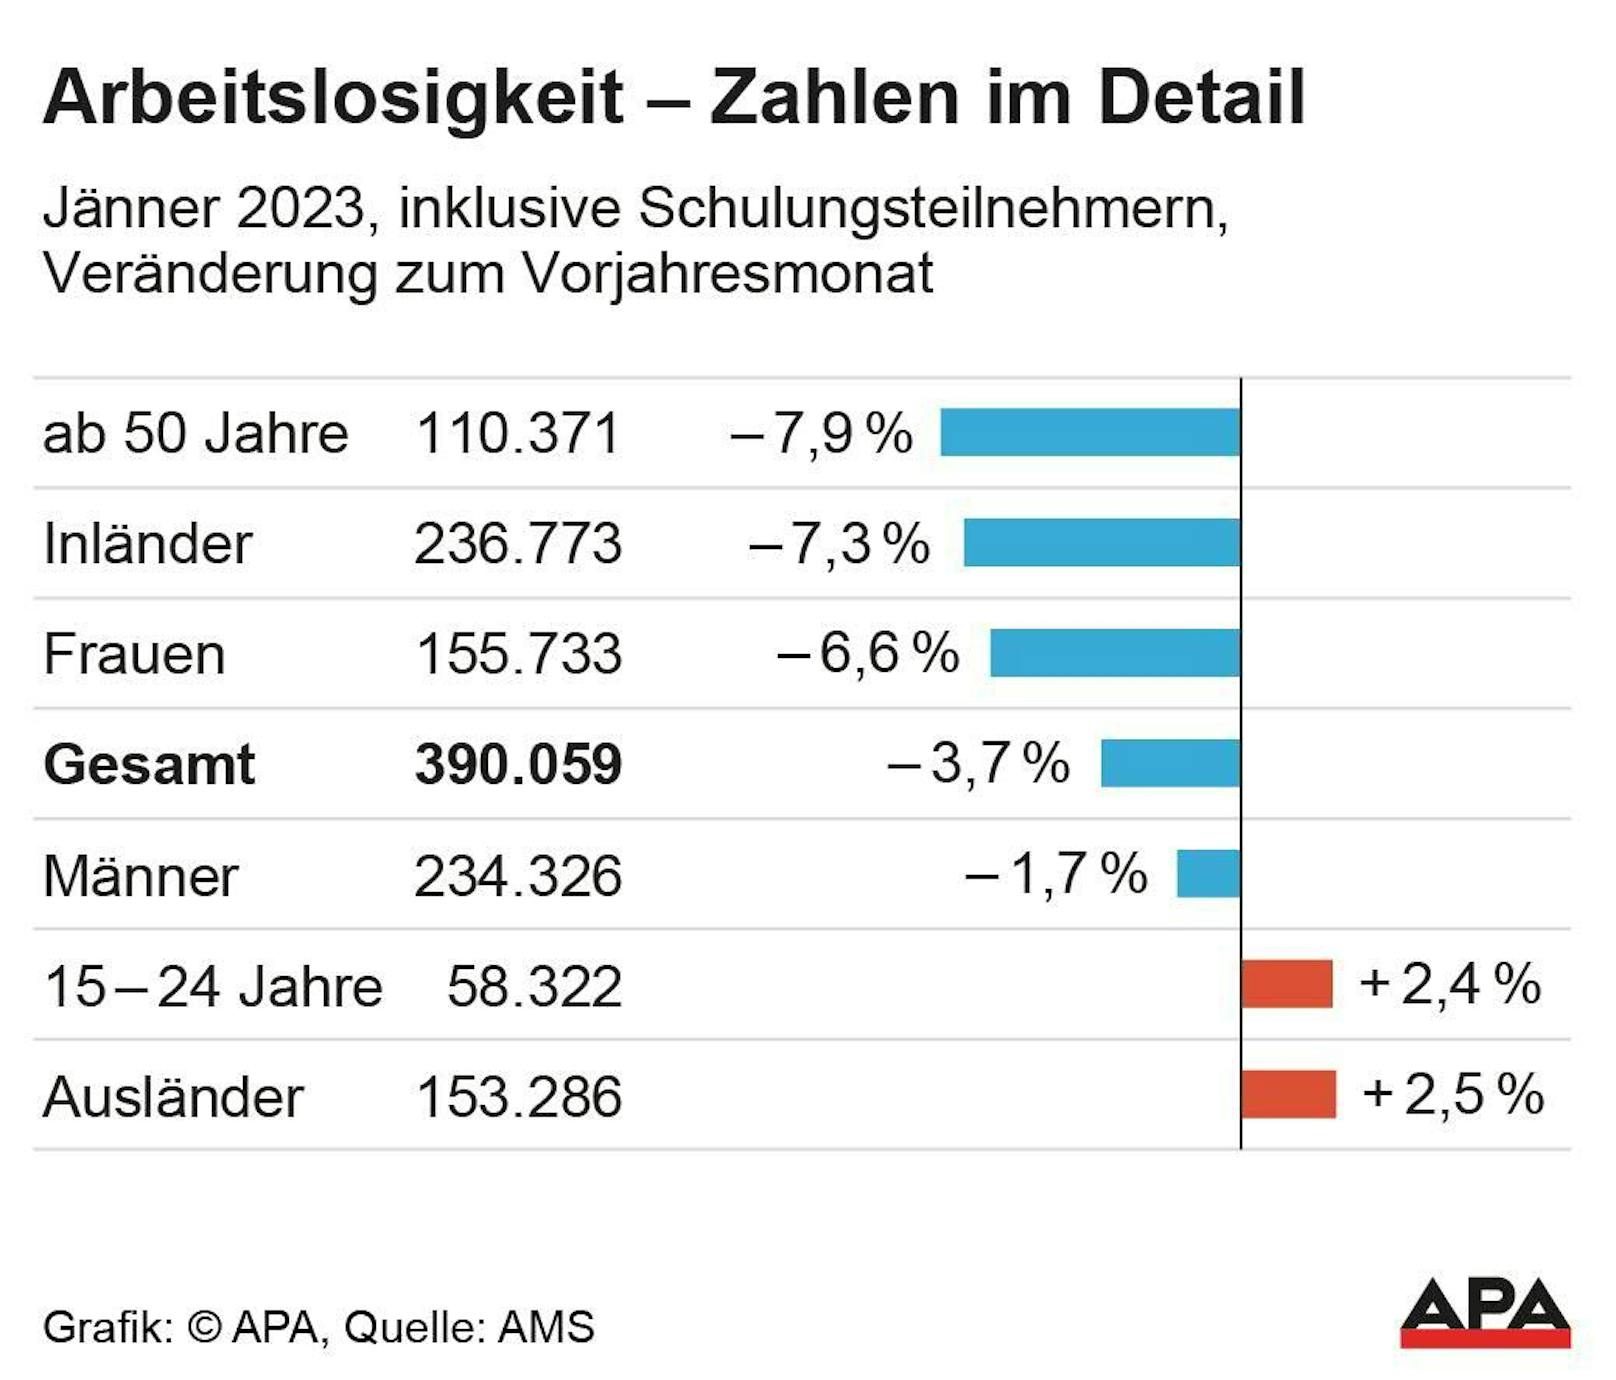 Die aktuellen Zahlen zur Arbeitslosigkeit in Österreich